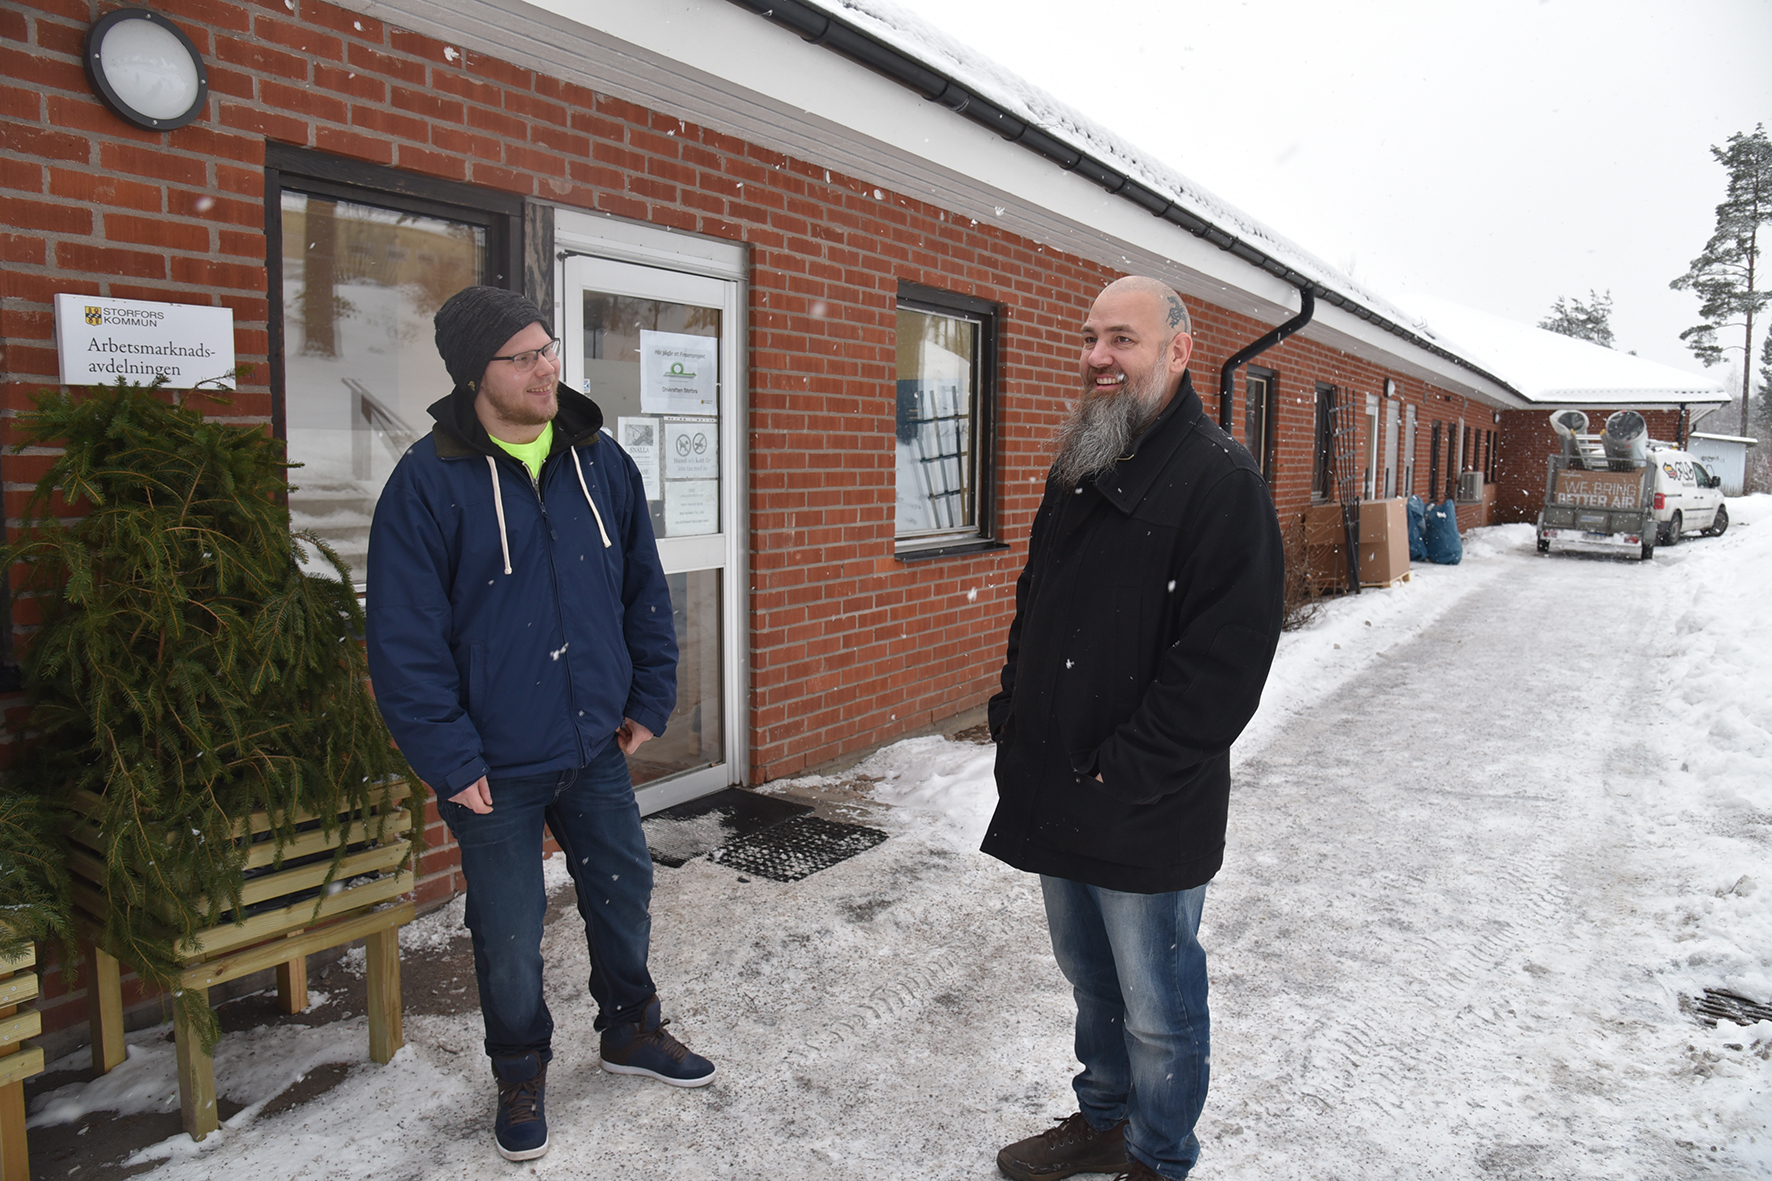 Henrik träffar Tobias Davidsson, en tidigare deltagare i Arbetsmarknadsenhetens vanliga verksamhet. Idag jobbar han heltid på Montera och säger att tiden på AME snabbt gav hjälp att ta sig vidare.